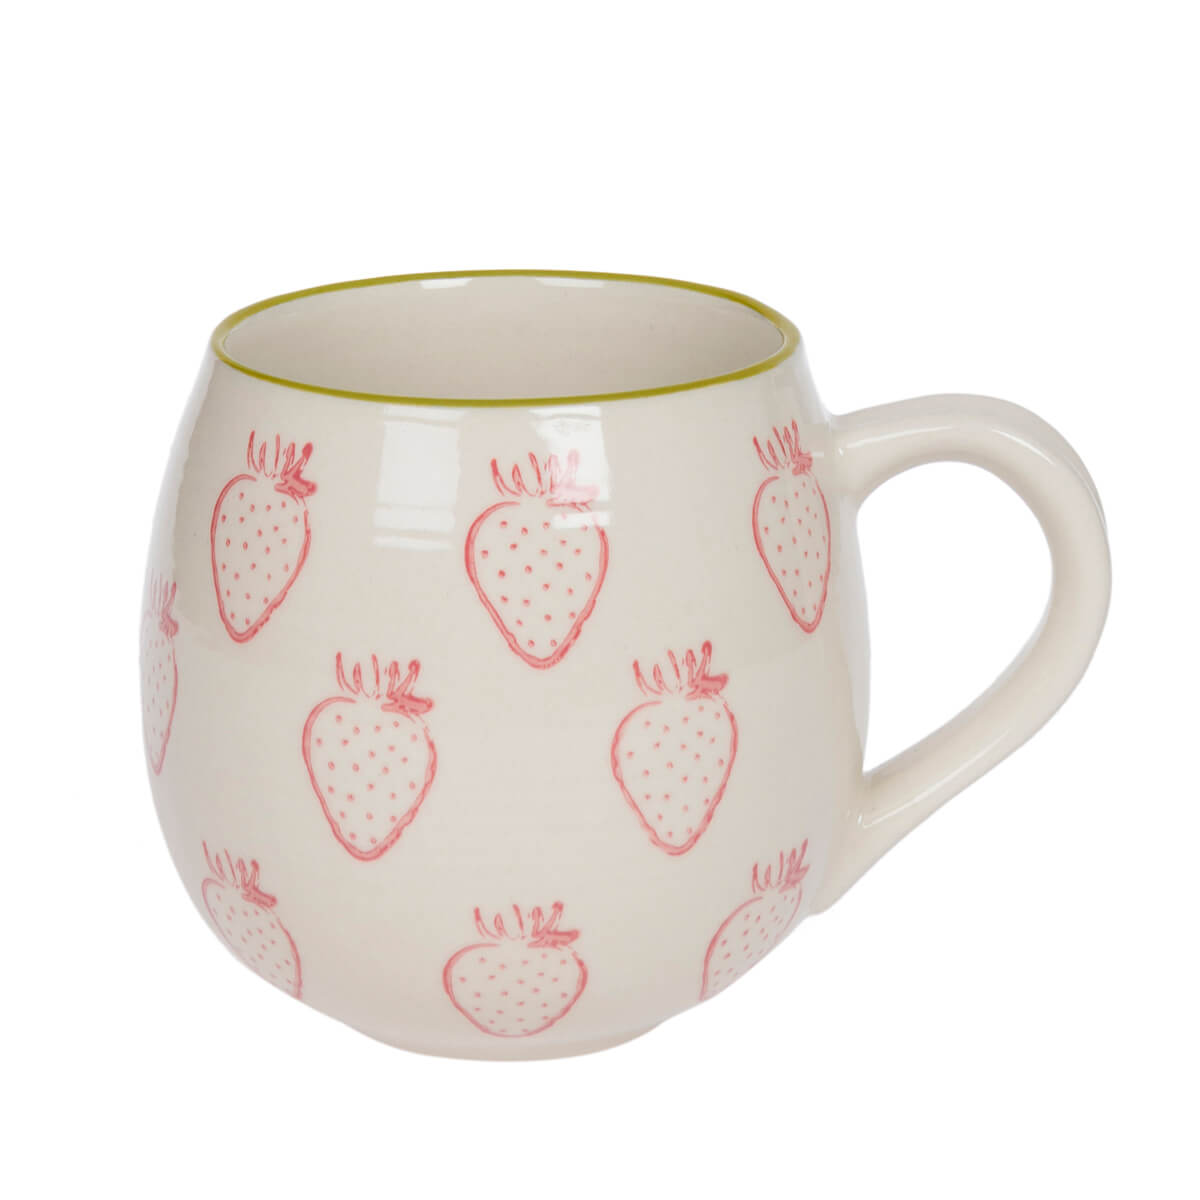 Strawberries Stoneware Mug